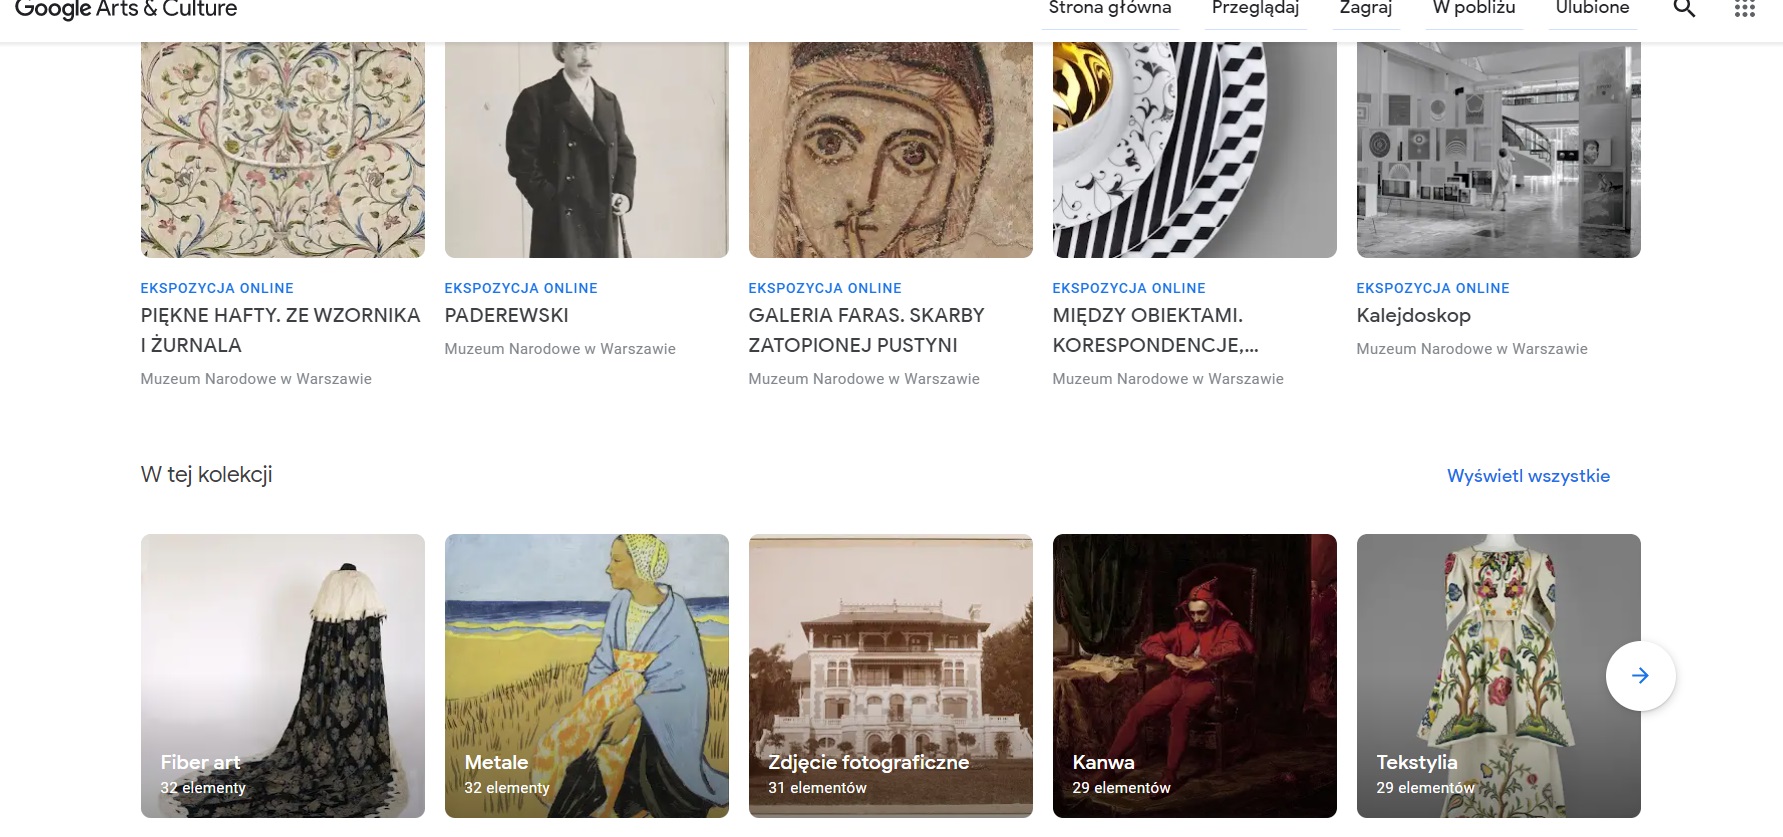 Zdjęcie pierwszej strony aplikacji google arts&culture na której widnieją kolorowe obrazy z ekspozycji Muzeum Narodowego.